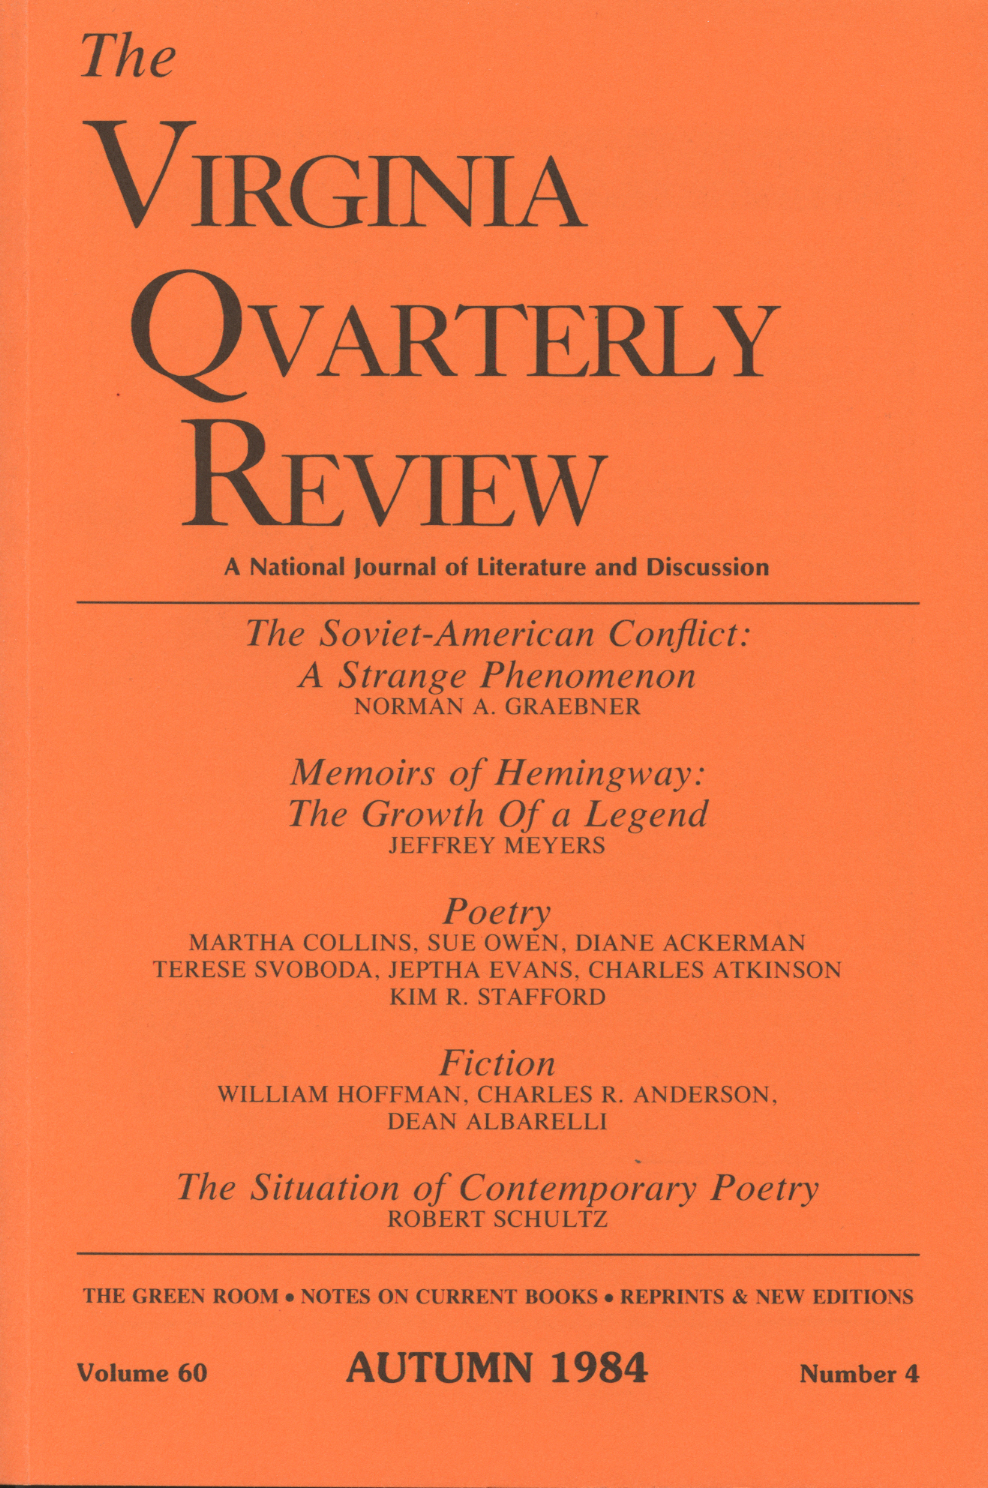 Virginia Quarterly Review, Autumn 1984 cover